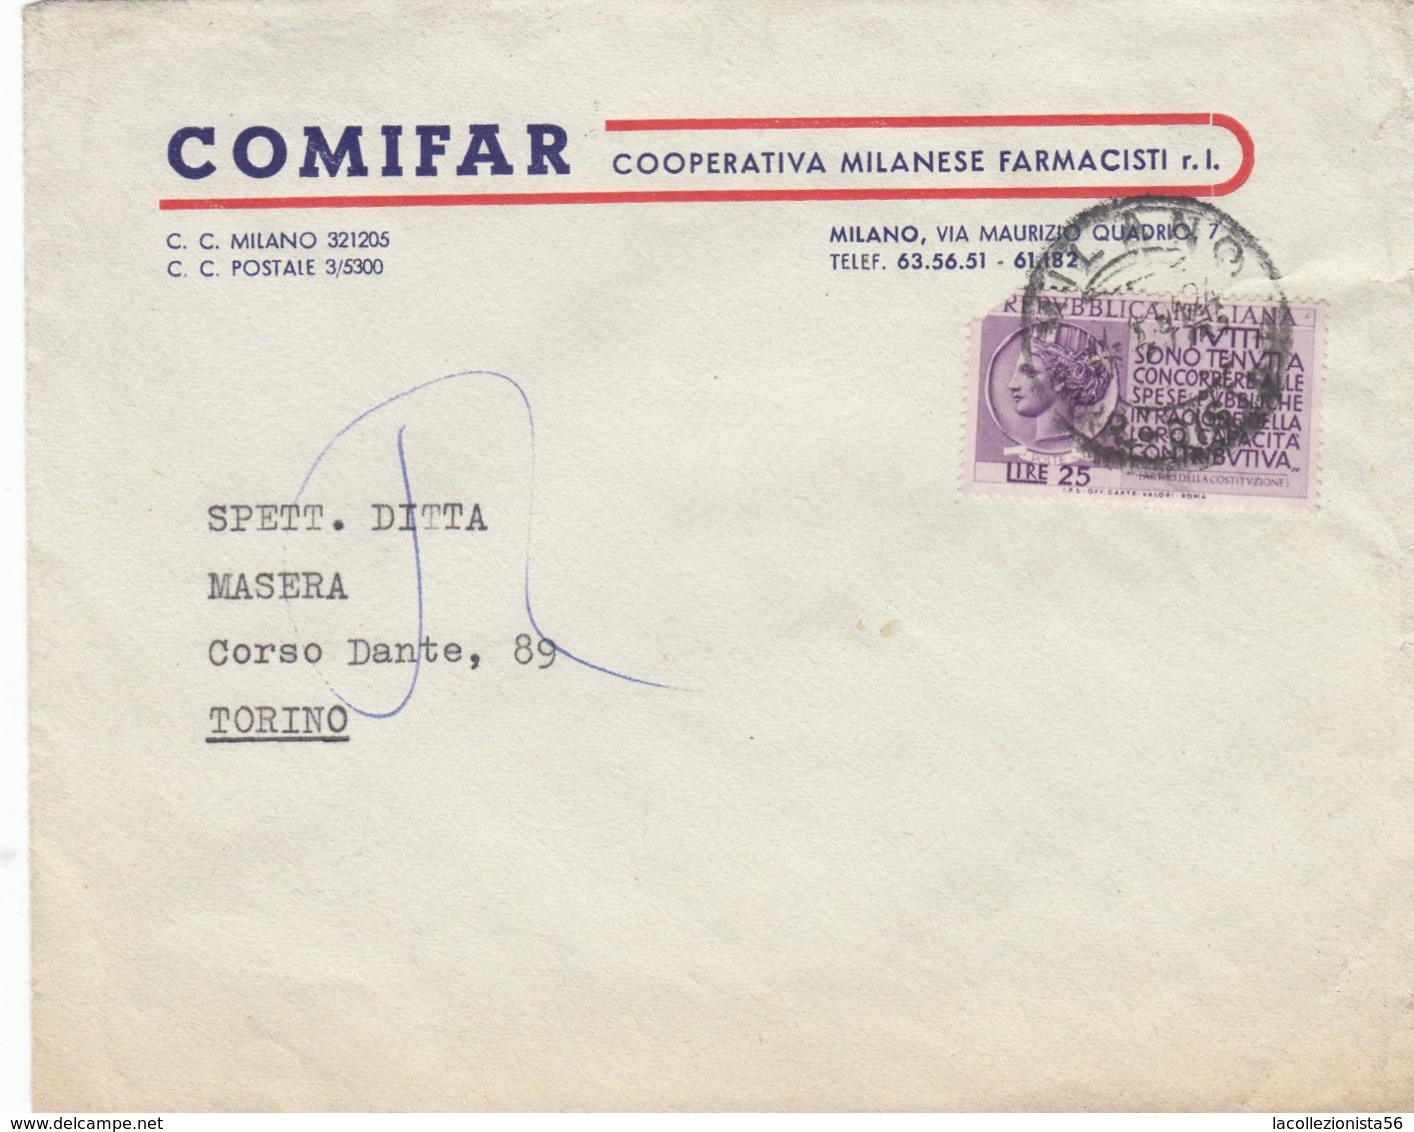 9564-BUSTA PUBBLICITARIA COMIFAR-COOP. MILANESE FARMACISTI-1954 - Pubblicitari